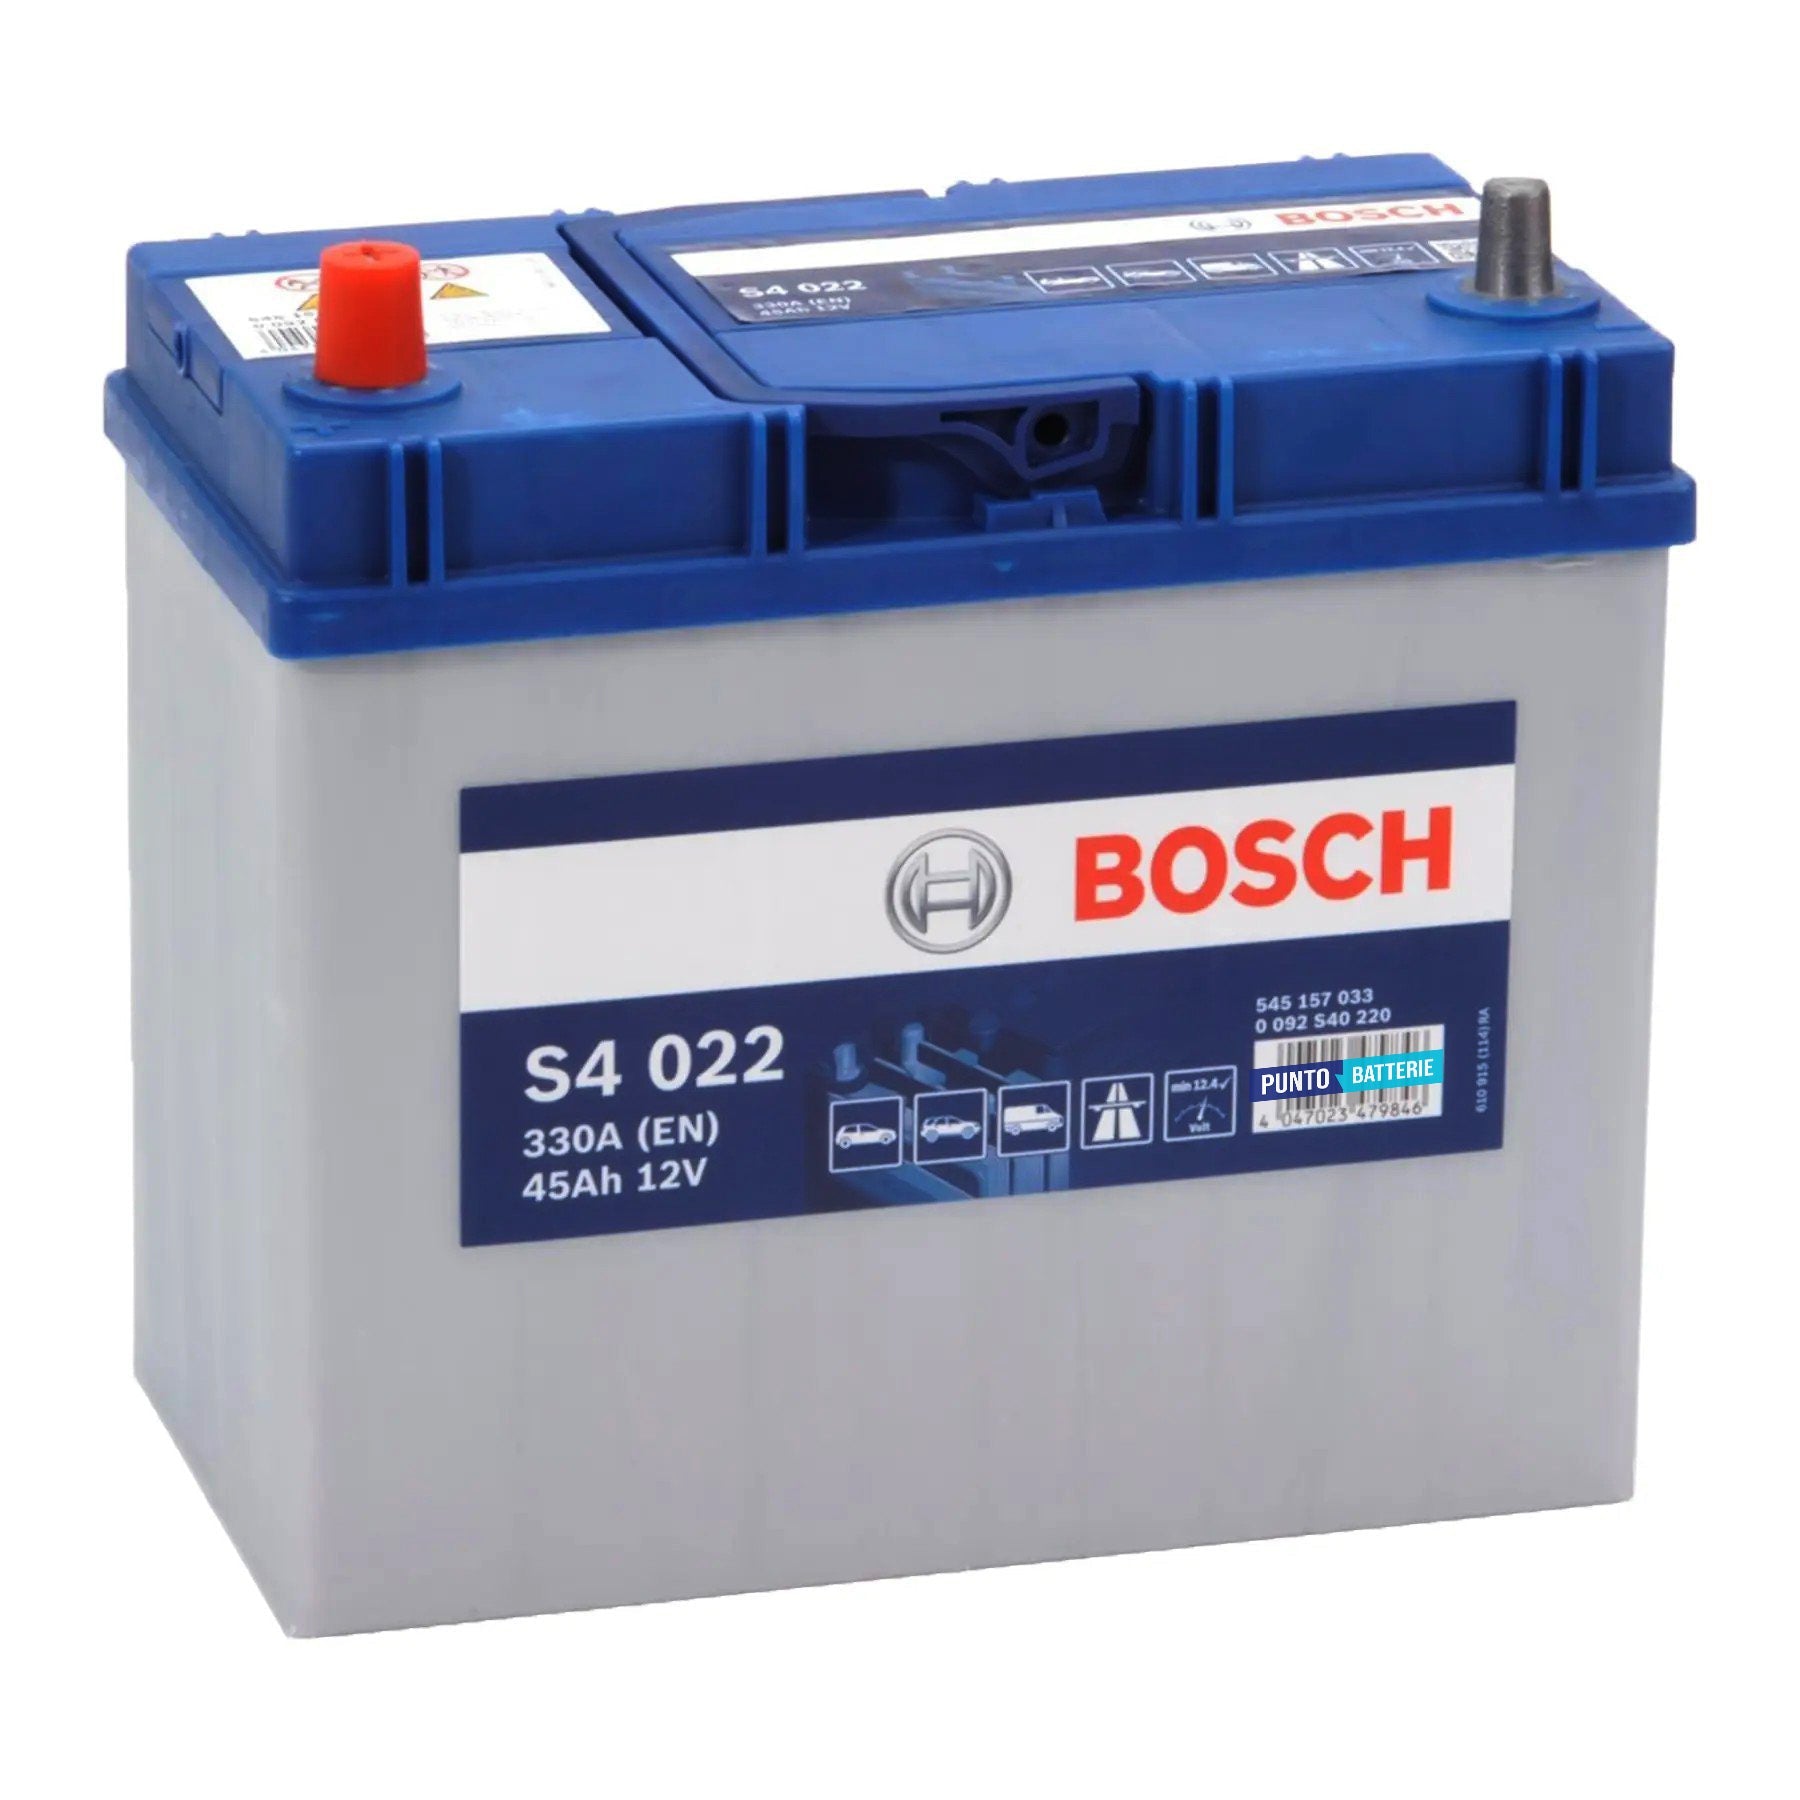 Batteria originale Bosch S4 S4 022, dimensioni 238 x 129 x 227, polo positivo a sinistra, 12 volt, 45 amperora, 330 ampere. Batteria per auto e veicoli leggeri.